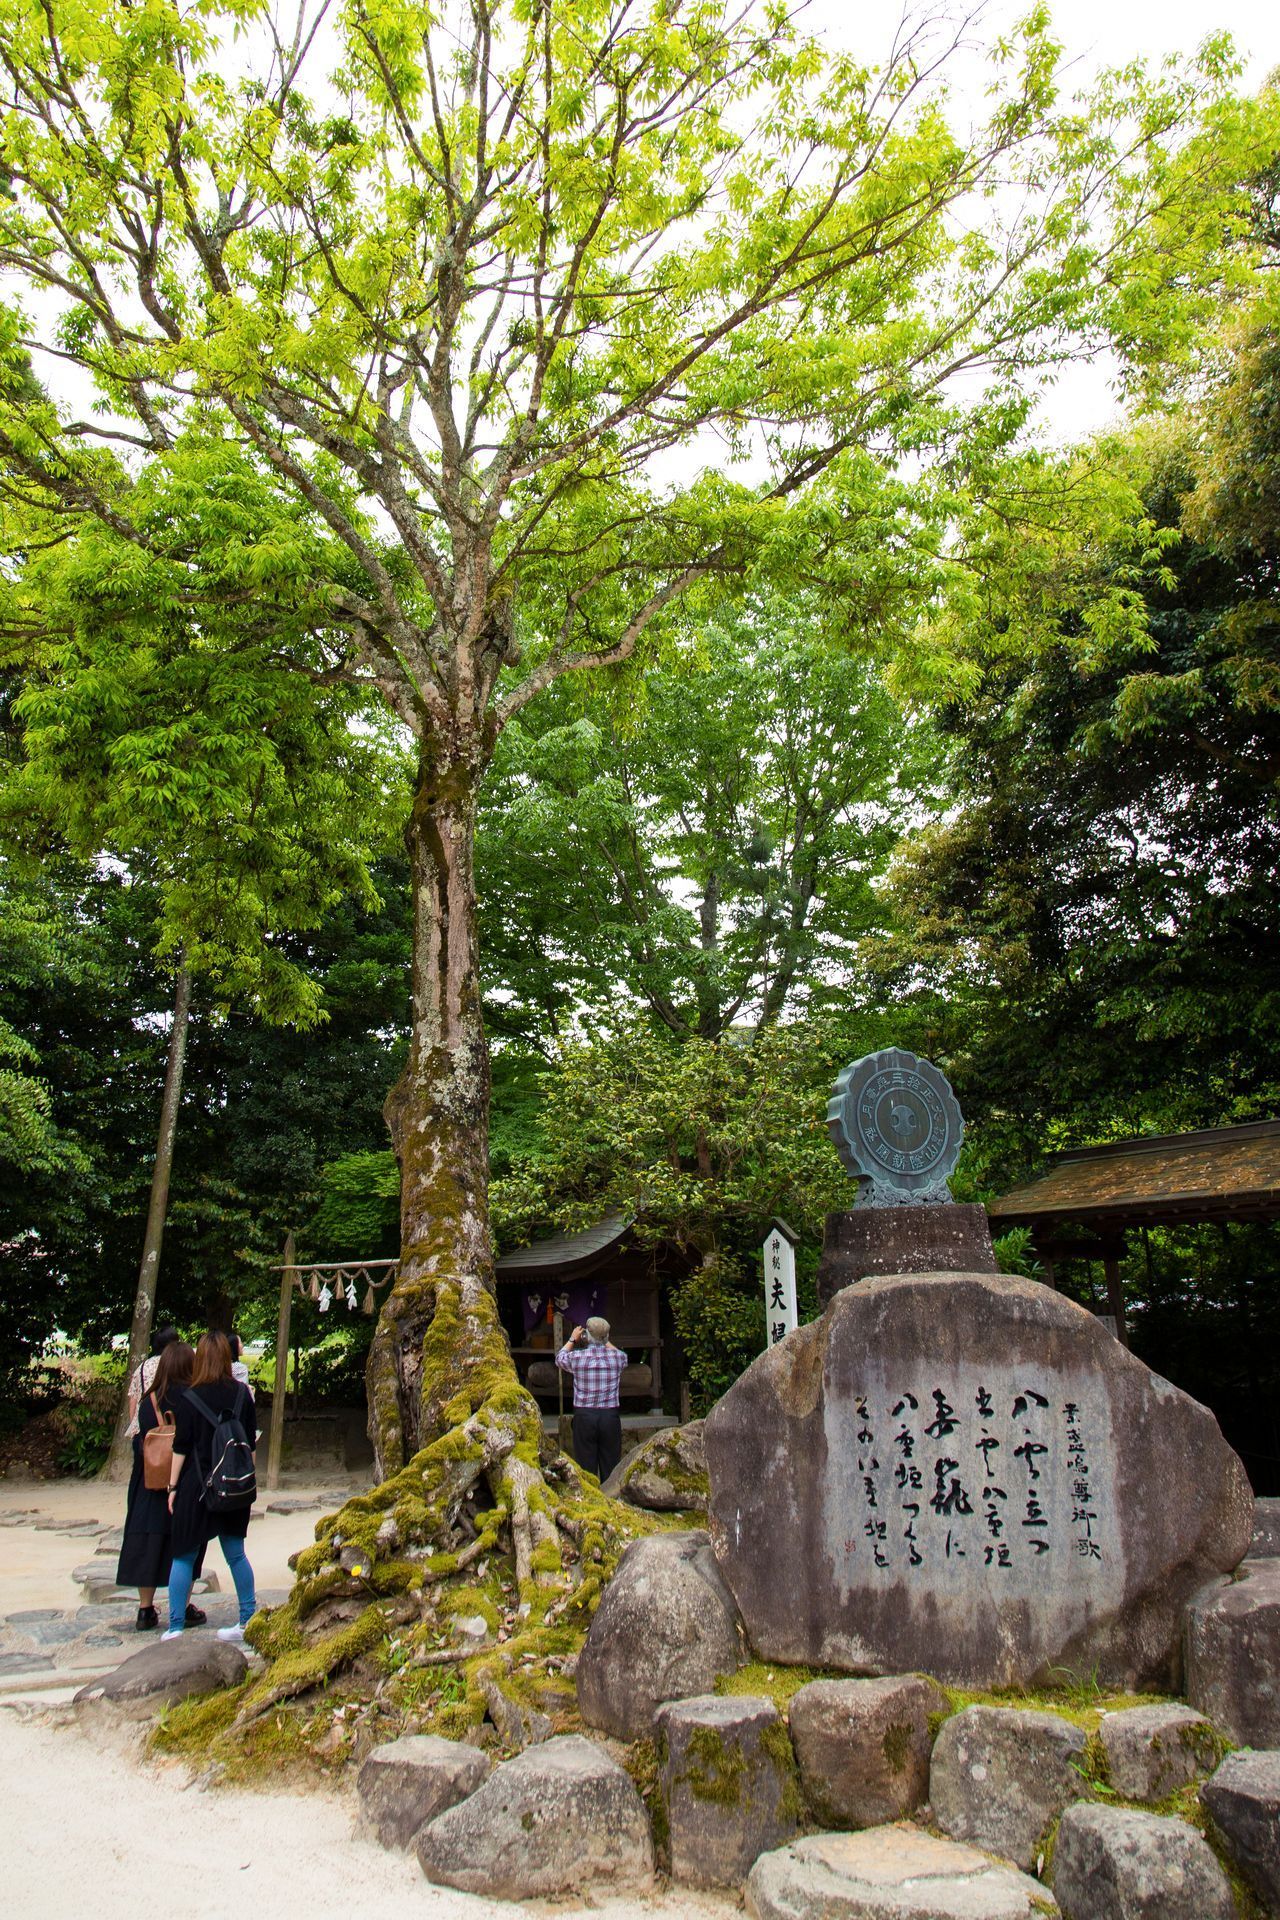 قصيدة سوسانوؤ الشهيرة منقوشة على صخرة تذكارية بالقرب من المعبد الرئيسي.